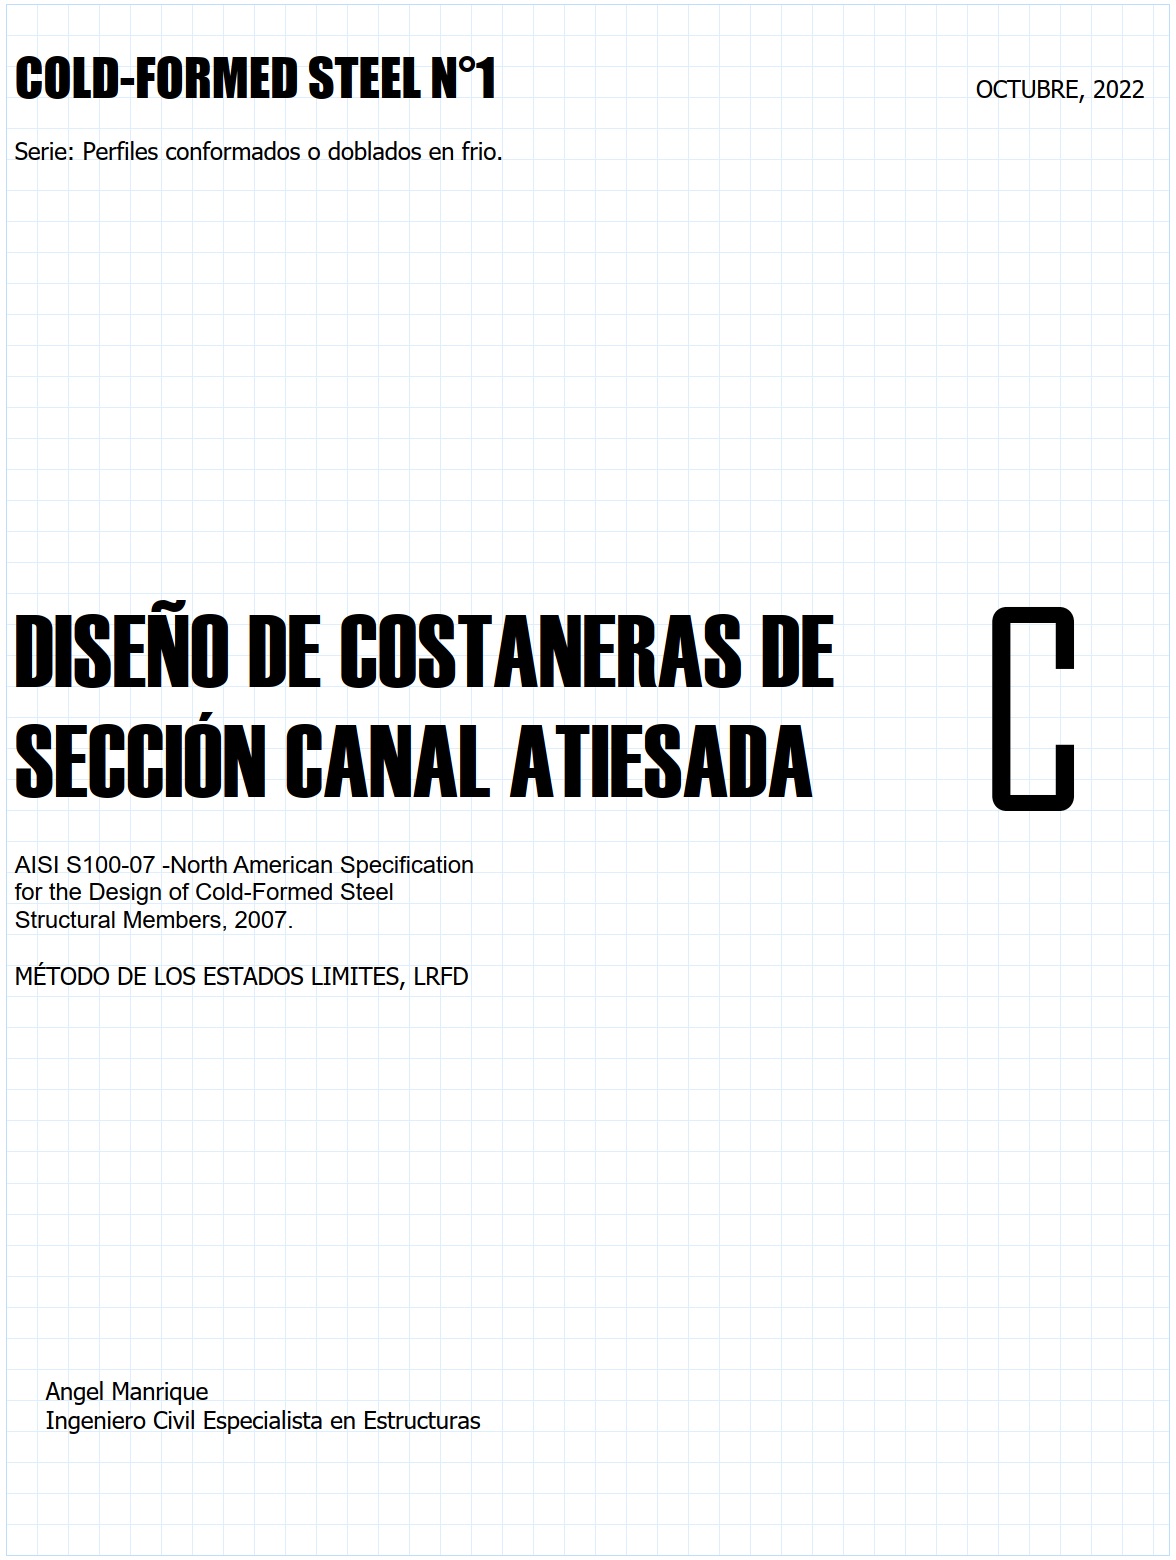 COLD-FORMED STEEL N1. Diseño de costaneras de sección canal atiesada. AISI S100-2007